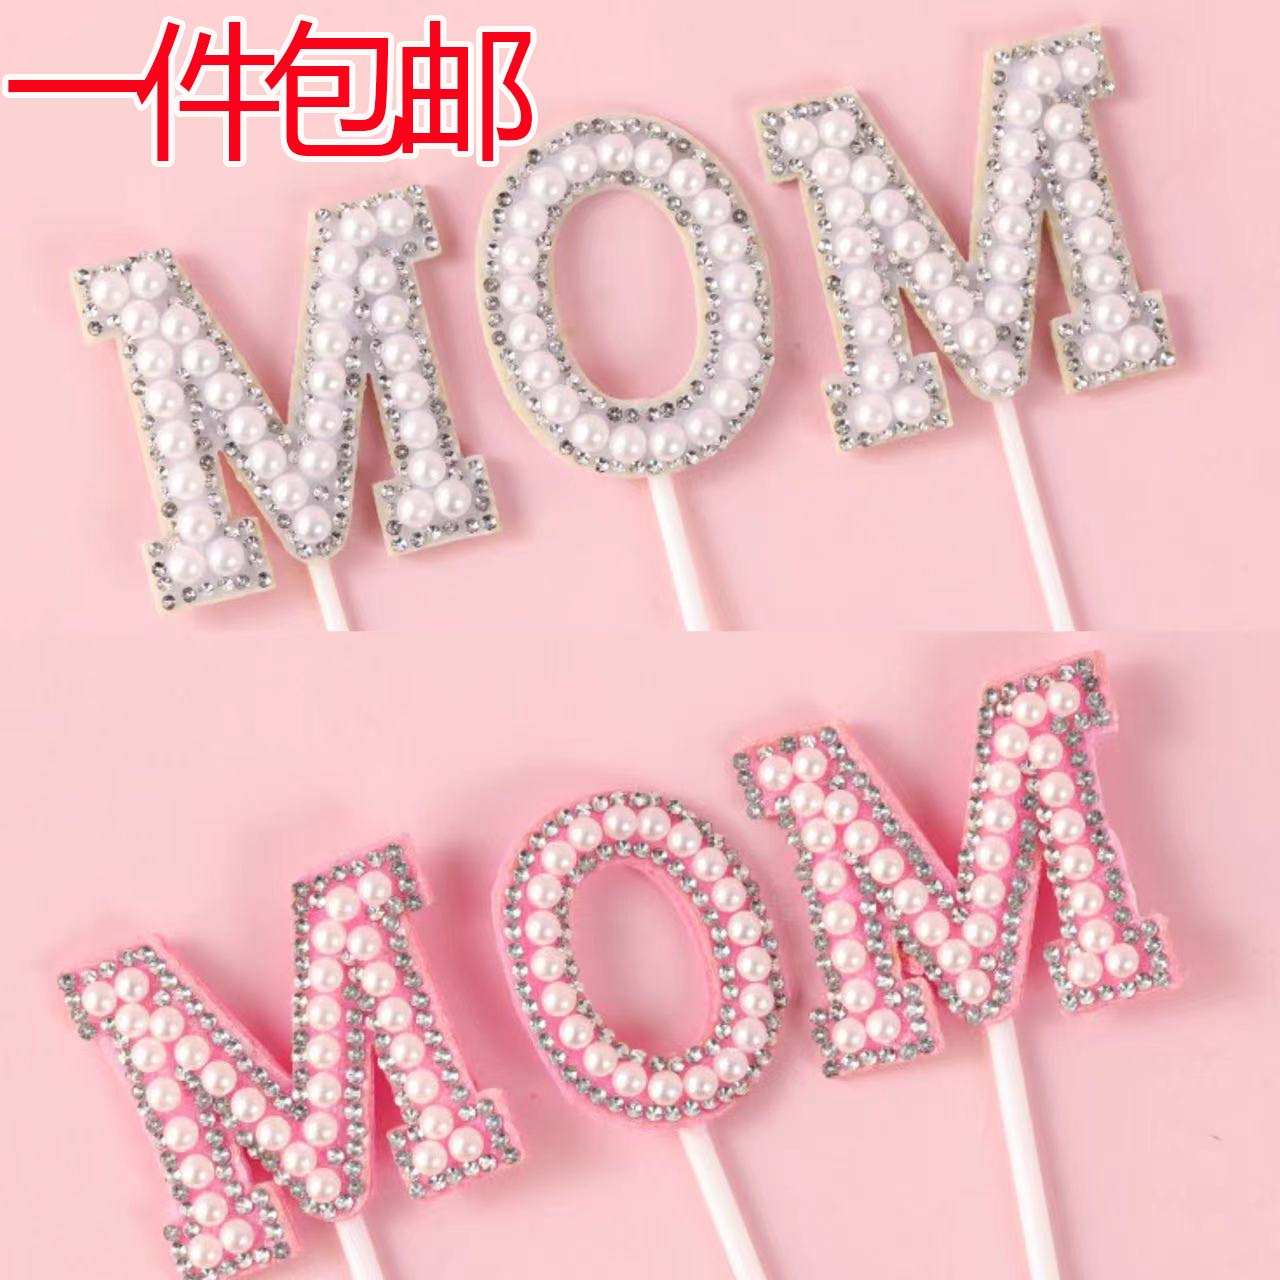 母亲节蛋糕装饰唯美珍珠钻石MOM插件女王女神妈妈生日甜品台插牌